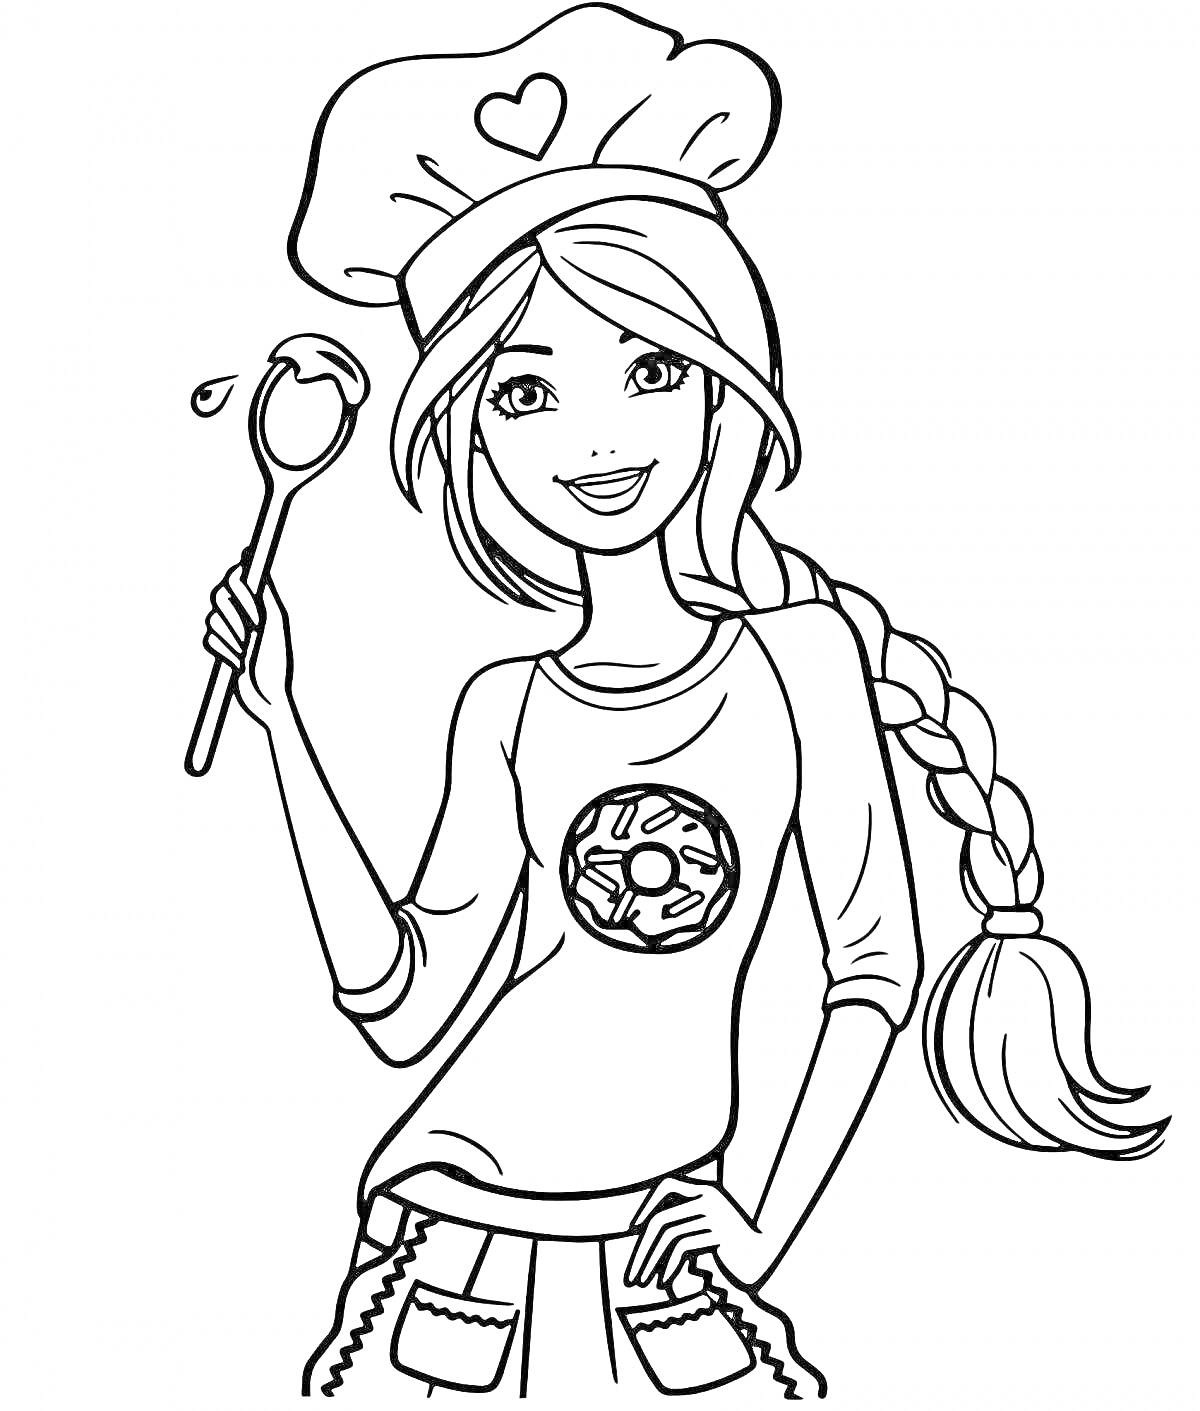 Раскраска Девушка-повар с длинной косой, ложкой, поварским колпаком с сердечком и фартуком